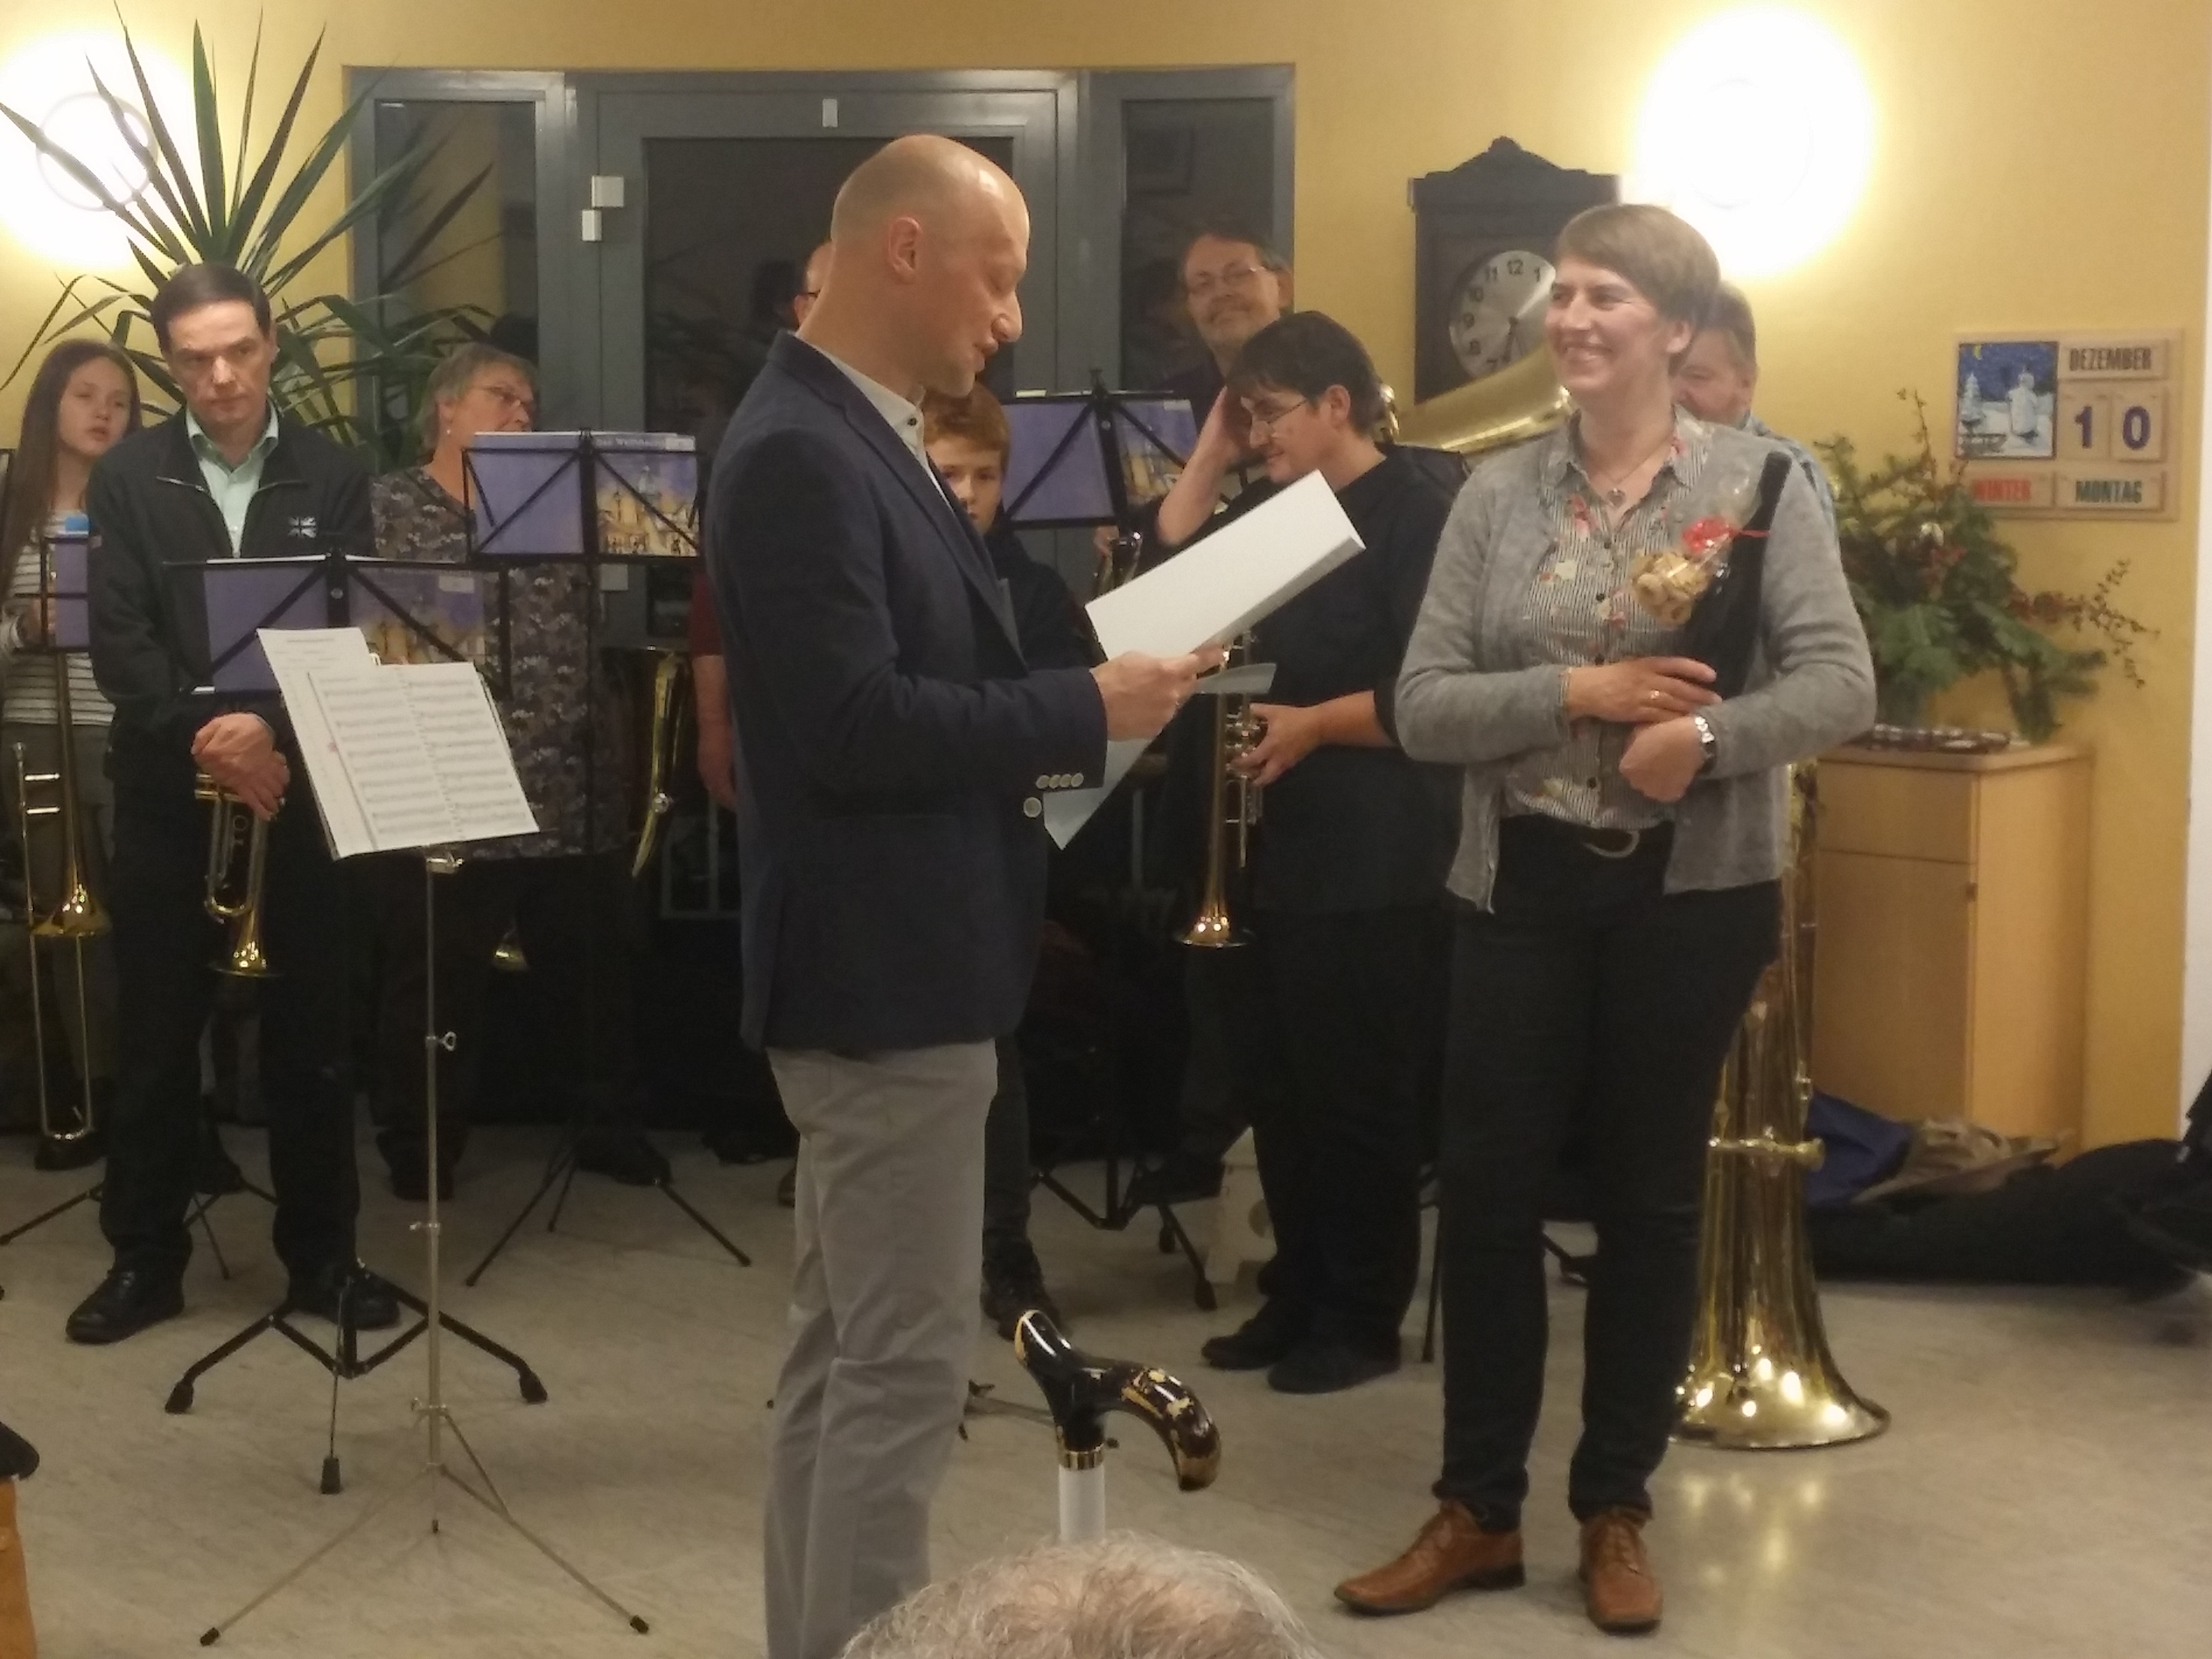 Einrichtungsleiter Norbert Bittner überreicht die Urkunde für 50 Jahre Konzerte im Seniorenheim Deining